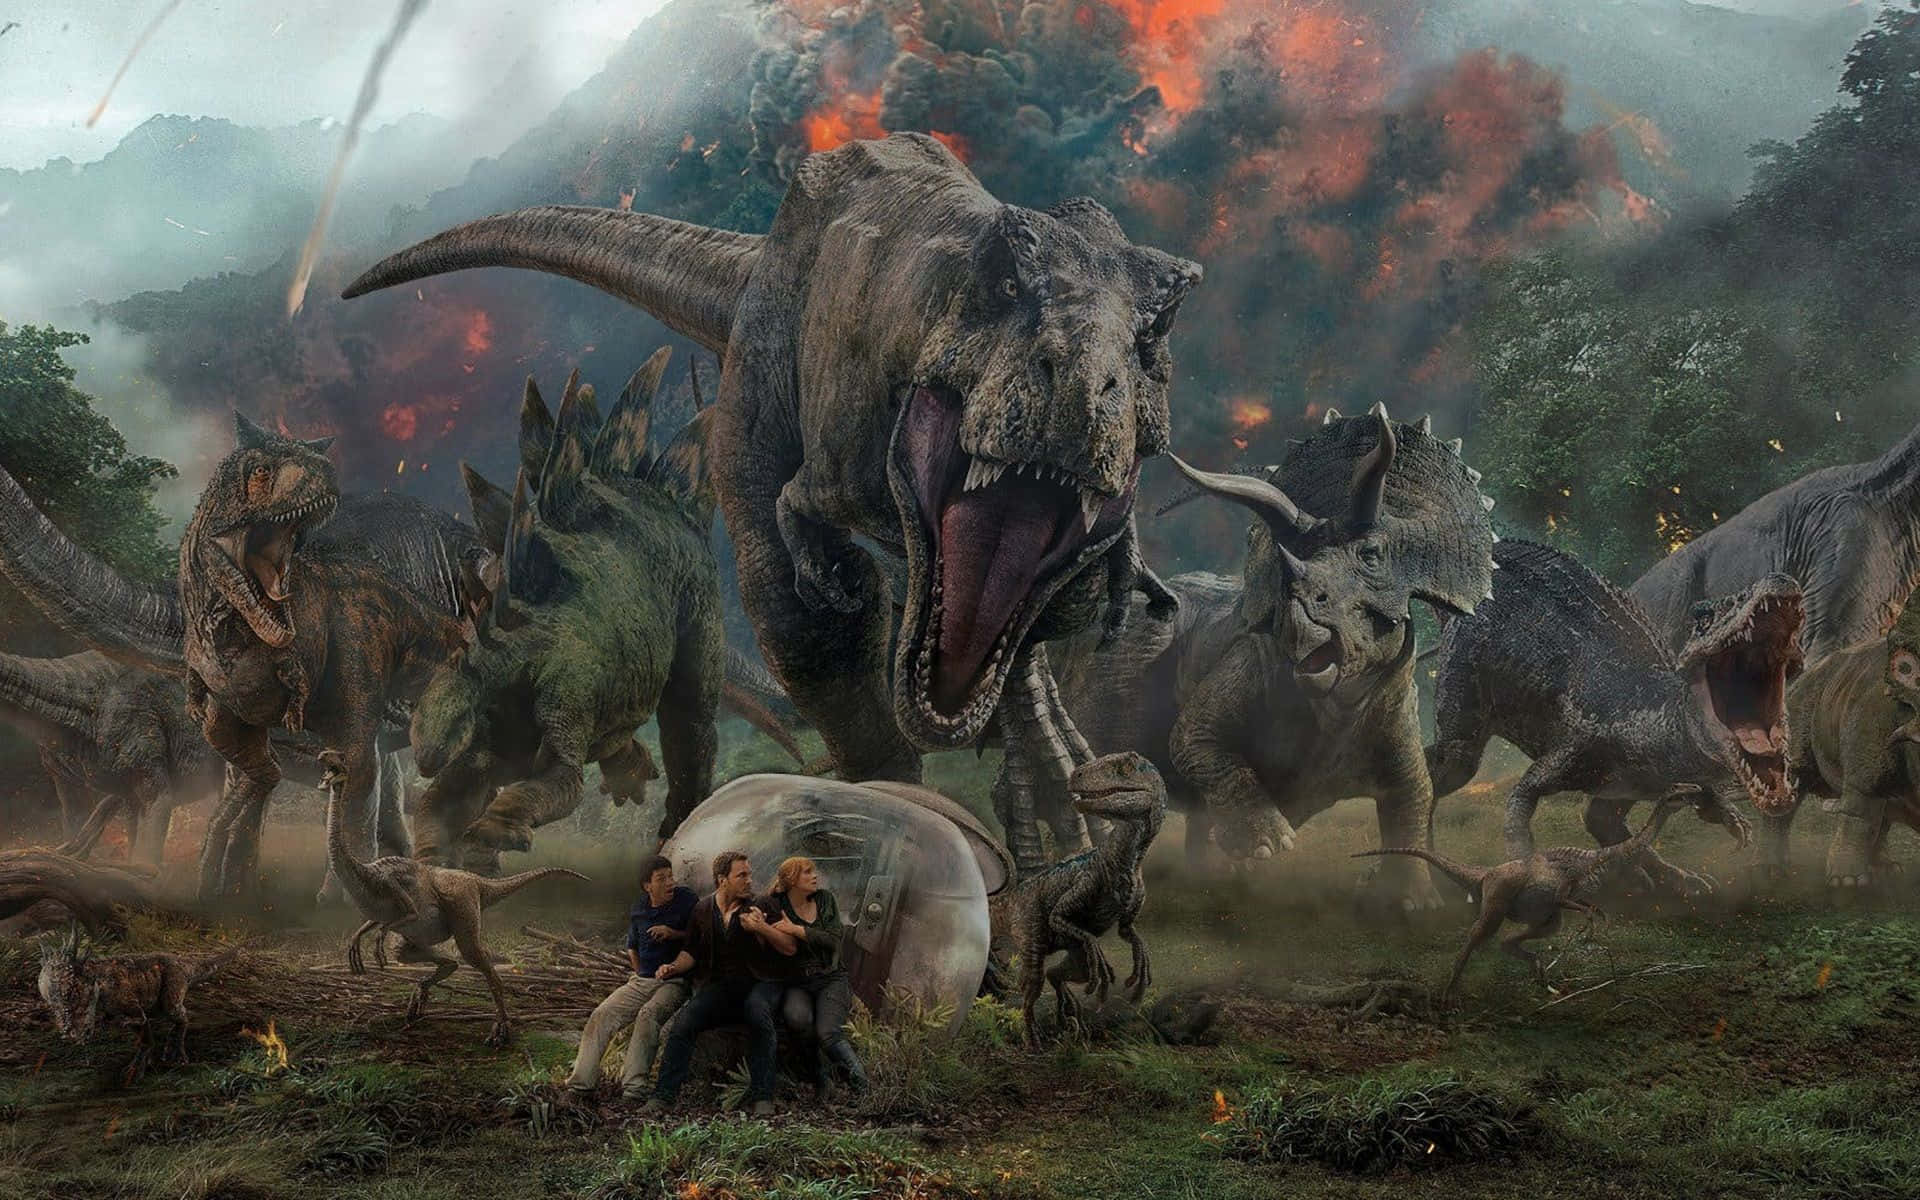 Triceratops dinosaur roaming its stunning natural habitat